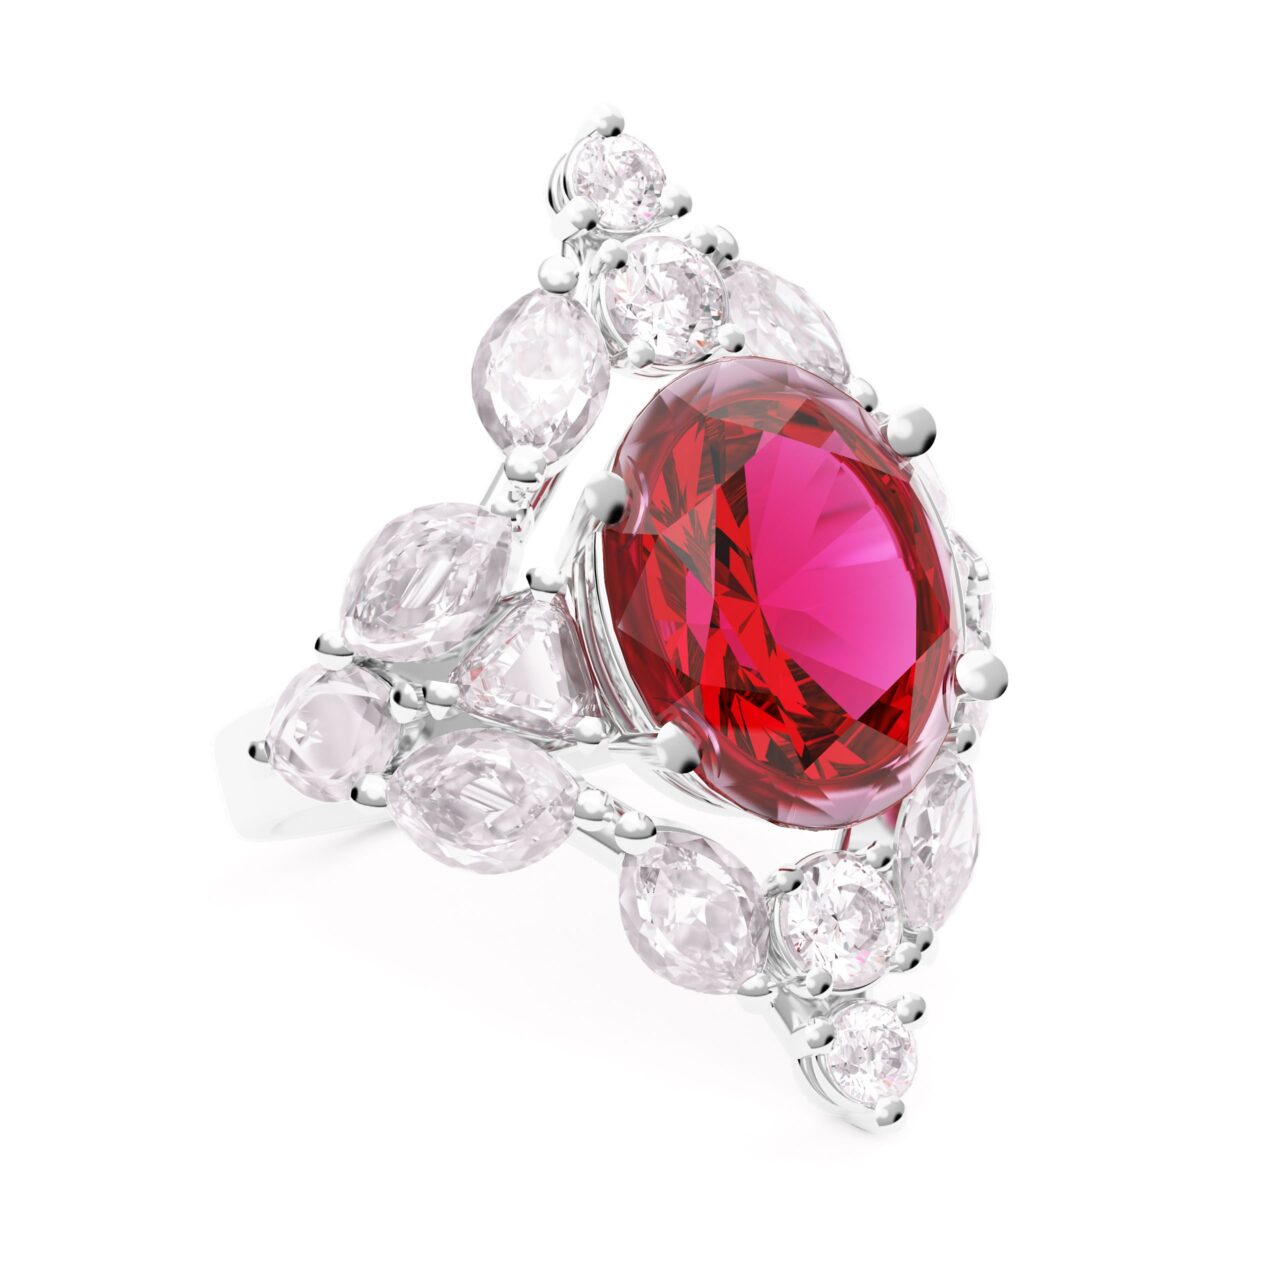 Bague Rubis Royal : un rubis taille ovale de 10 mm entouré de diamants sur un corps en or blanc 18 carats.